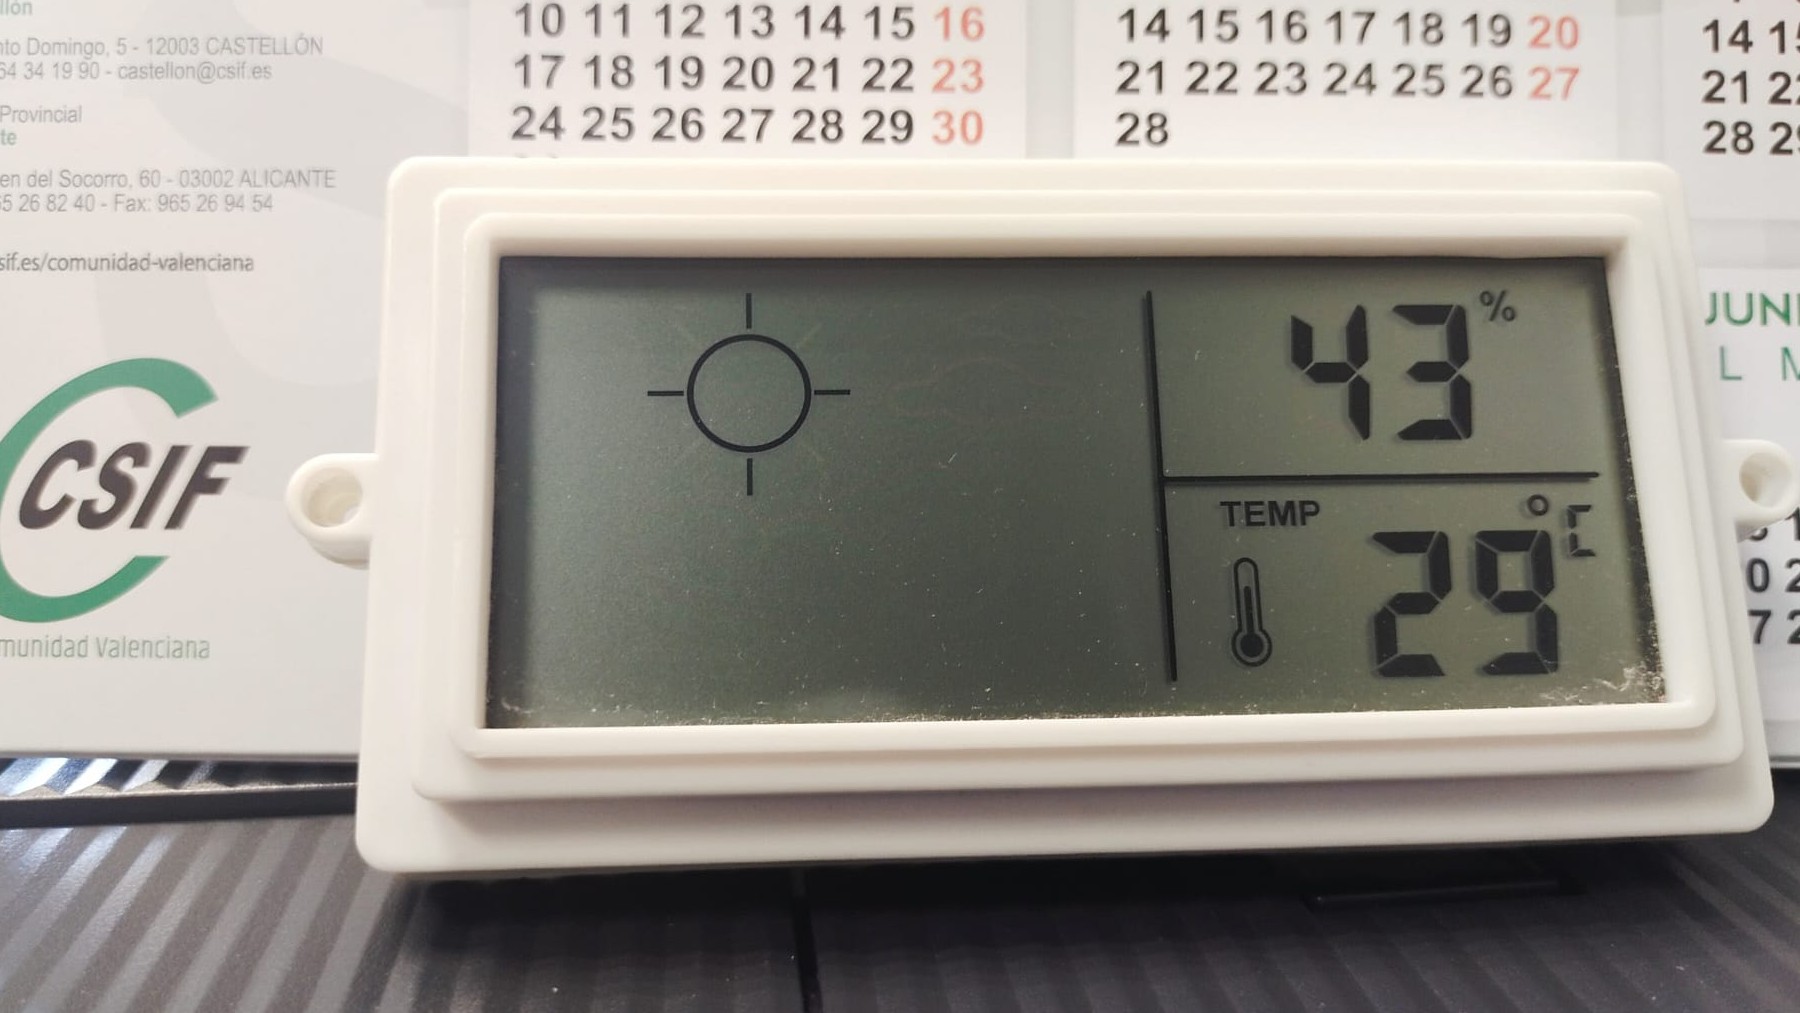 El medidor de temperatura que marca los 29 grados.